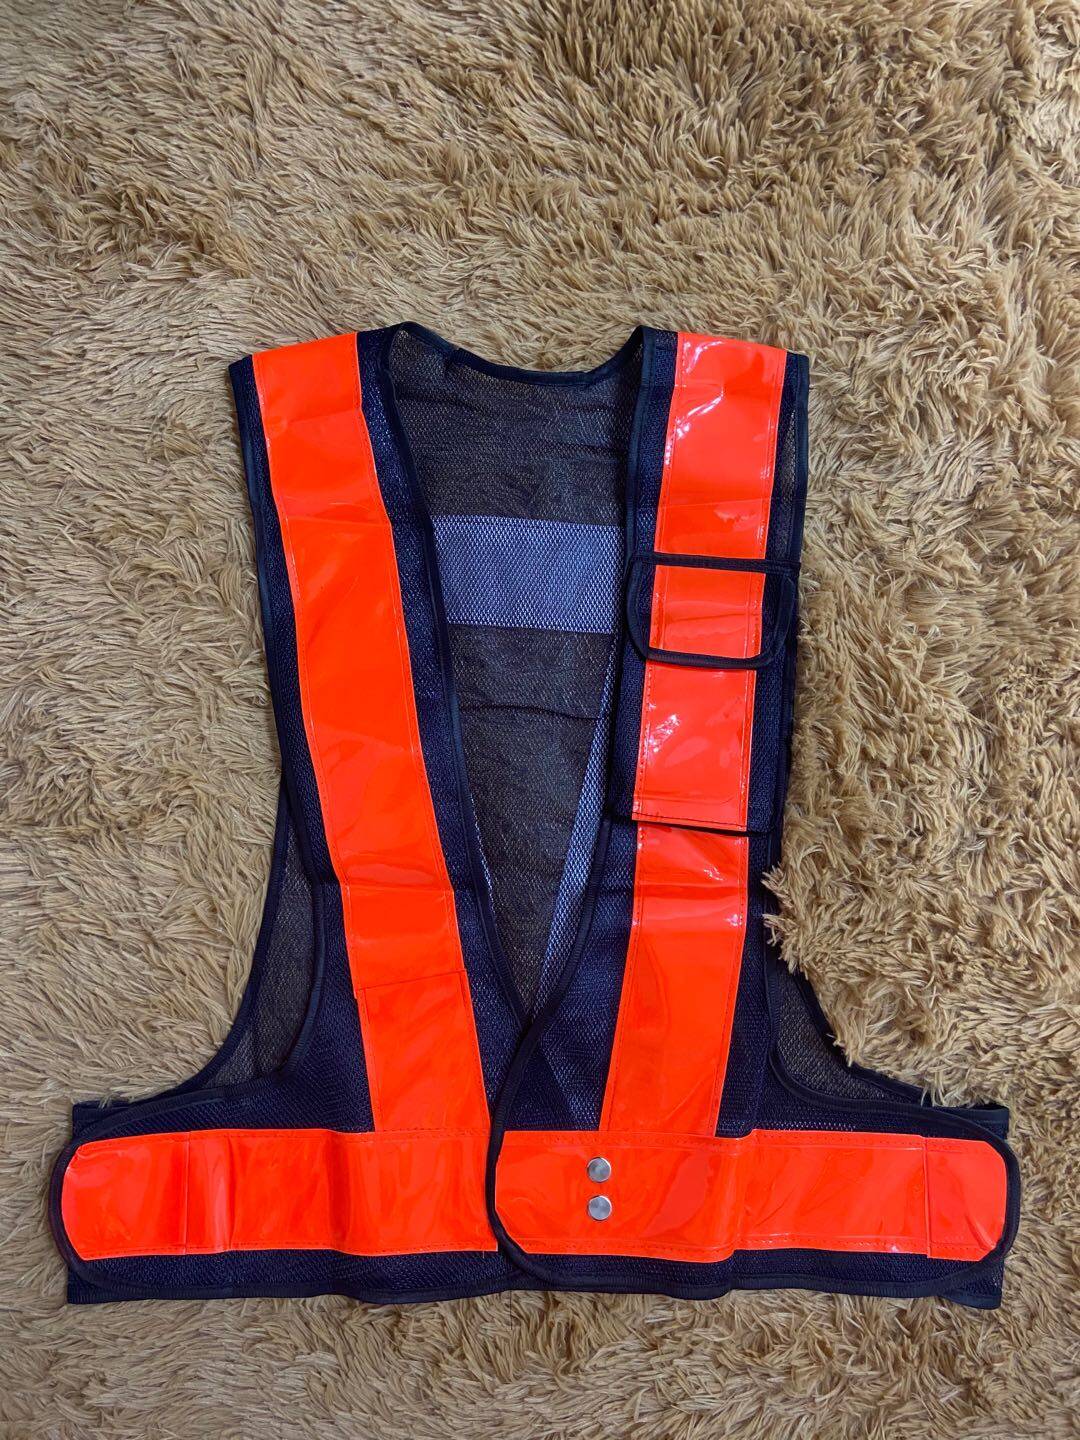 X-Box，safety vest Reflective Vest เสื้อจราจร  เสื้อกั๊กจราจร  เสื้อกั๊กสะท้อนแสง  เสื้อกั๊กสะท้อนแสง,ความปลอดภัยเสื้อกั๊กสะท้อนแสงเห็นได้ชัด Traffic Construction ชุดปั่นจักรยาน